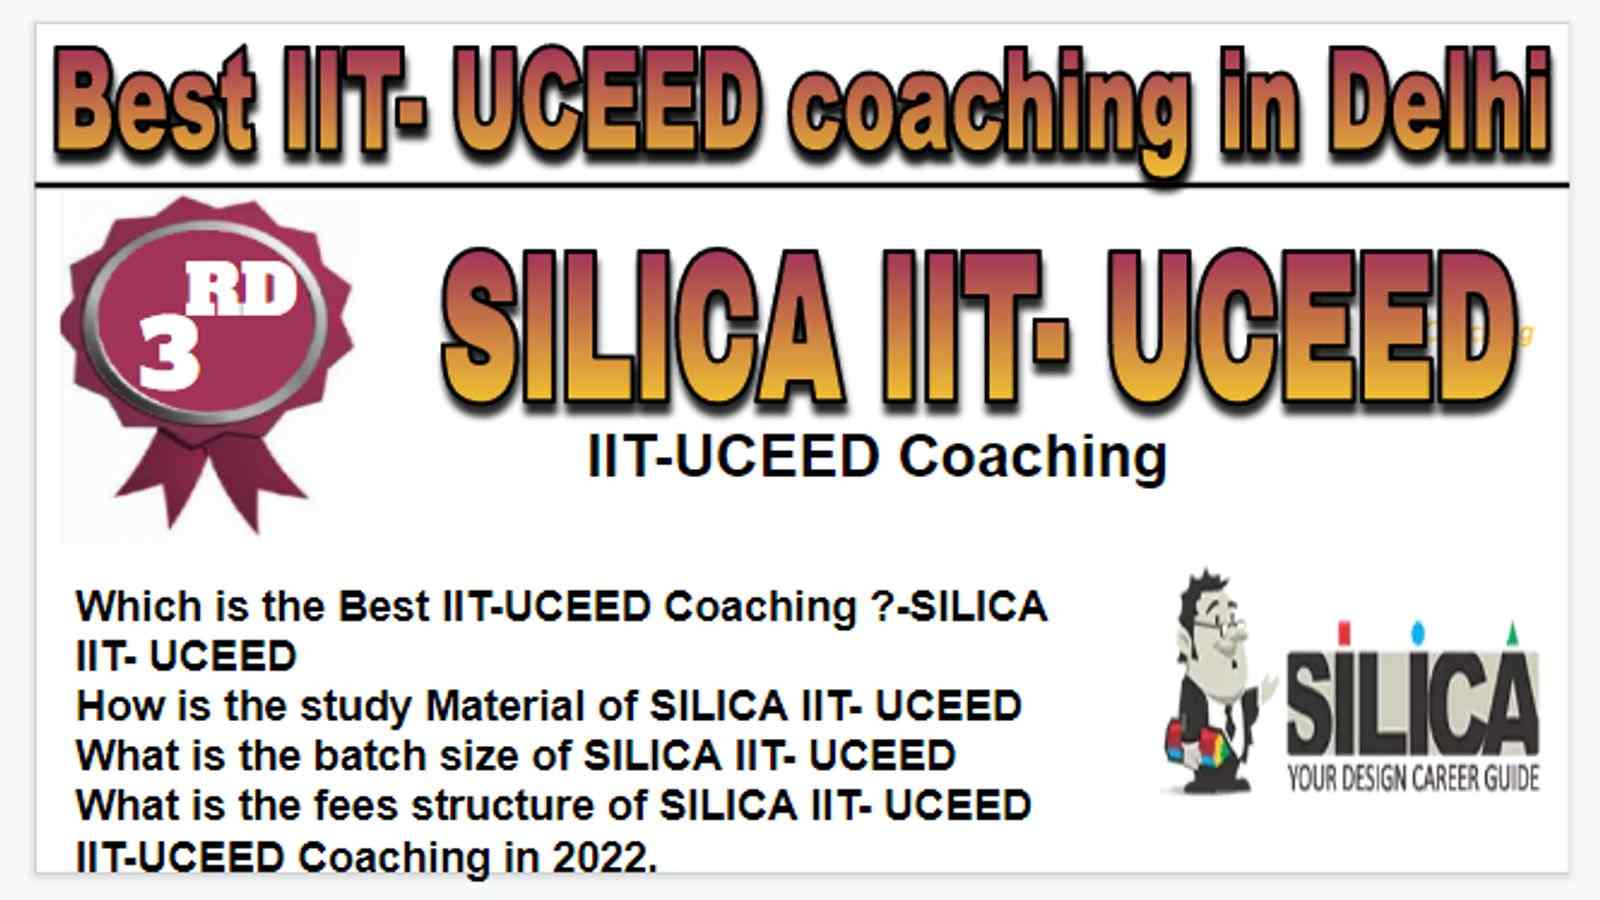 Rank 3 Best IIT- UCEED coaching in Delhi